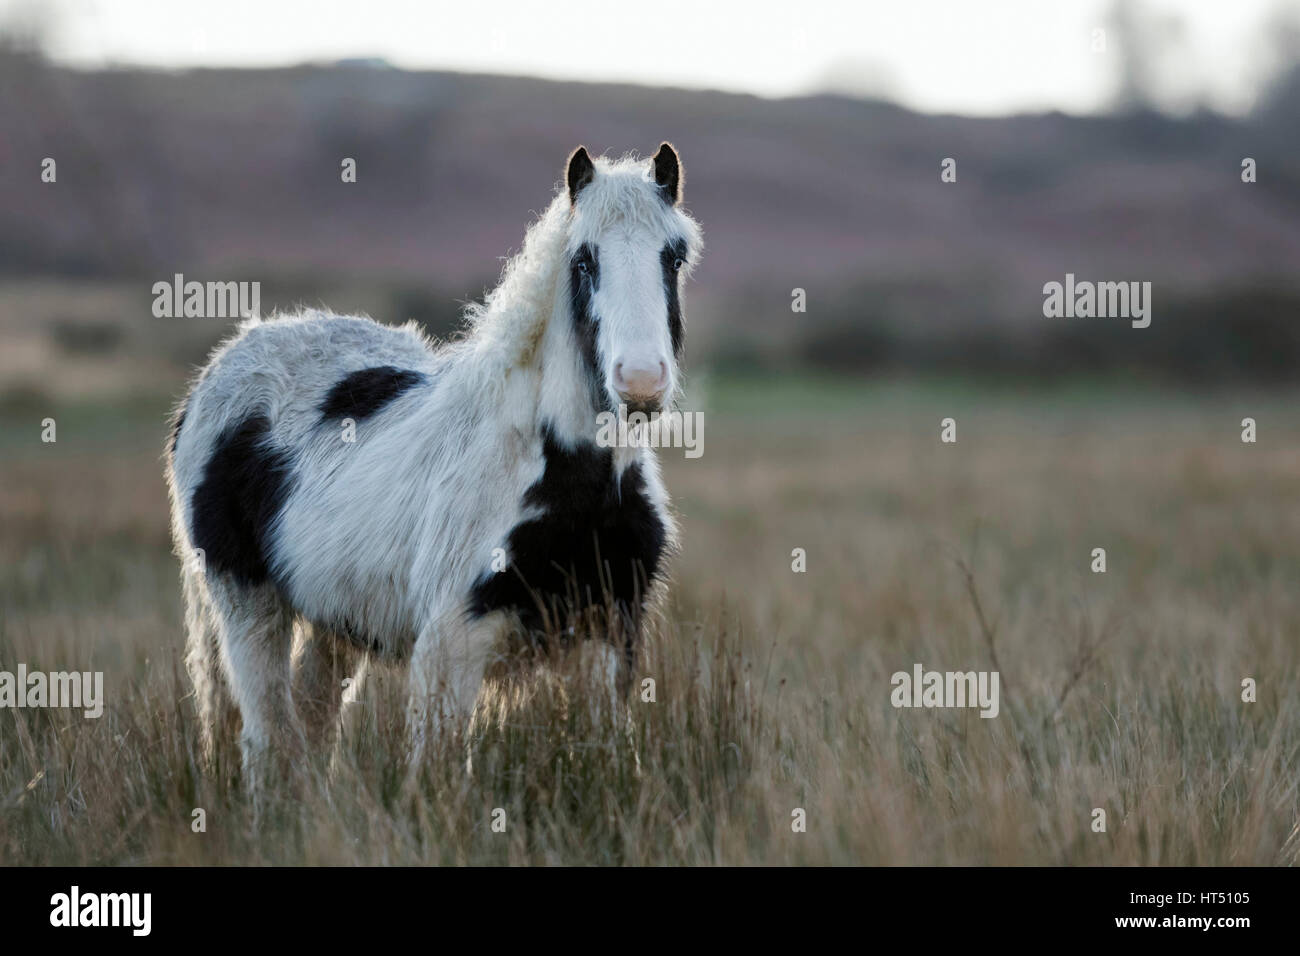 Pony (Equus caballus ferus), Pinto in erba, South Wales, Regno Unito Foto Stock